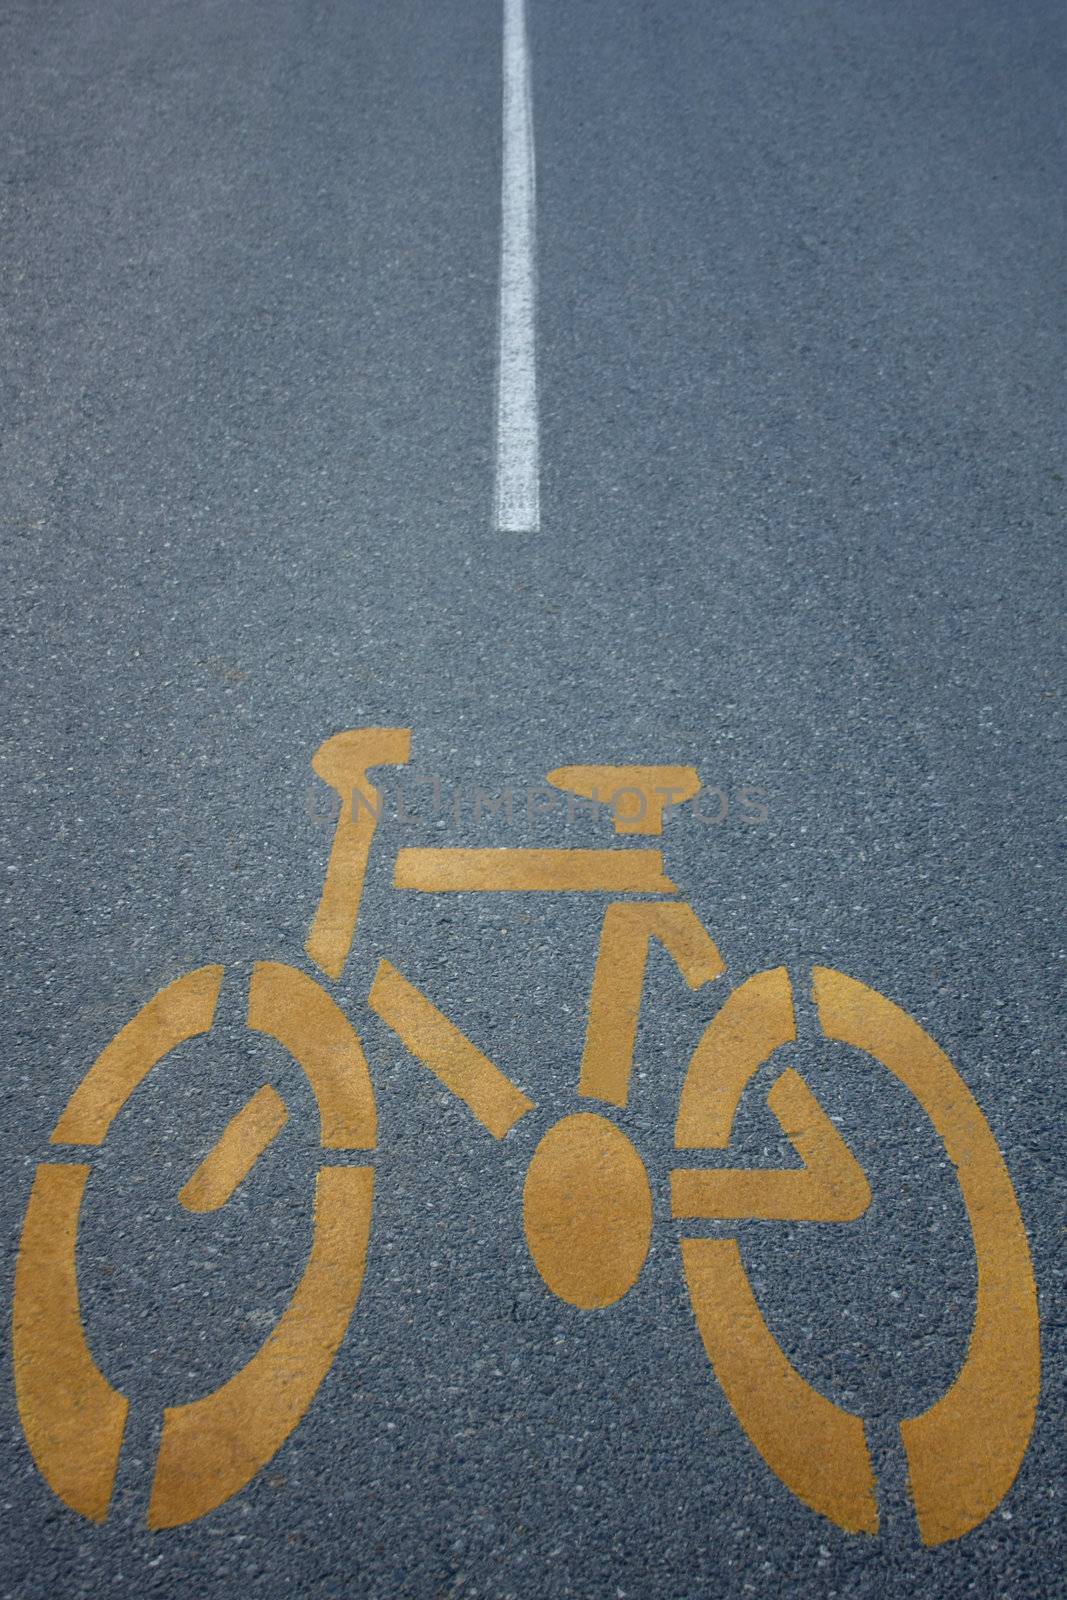 Bike Road sign